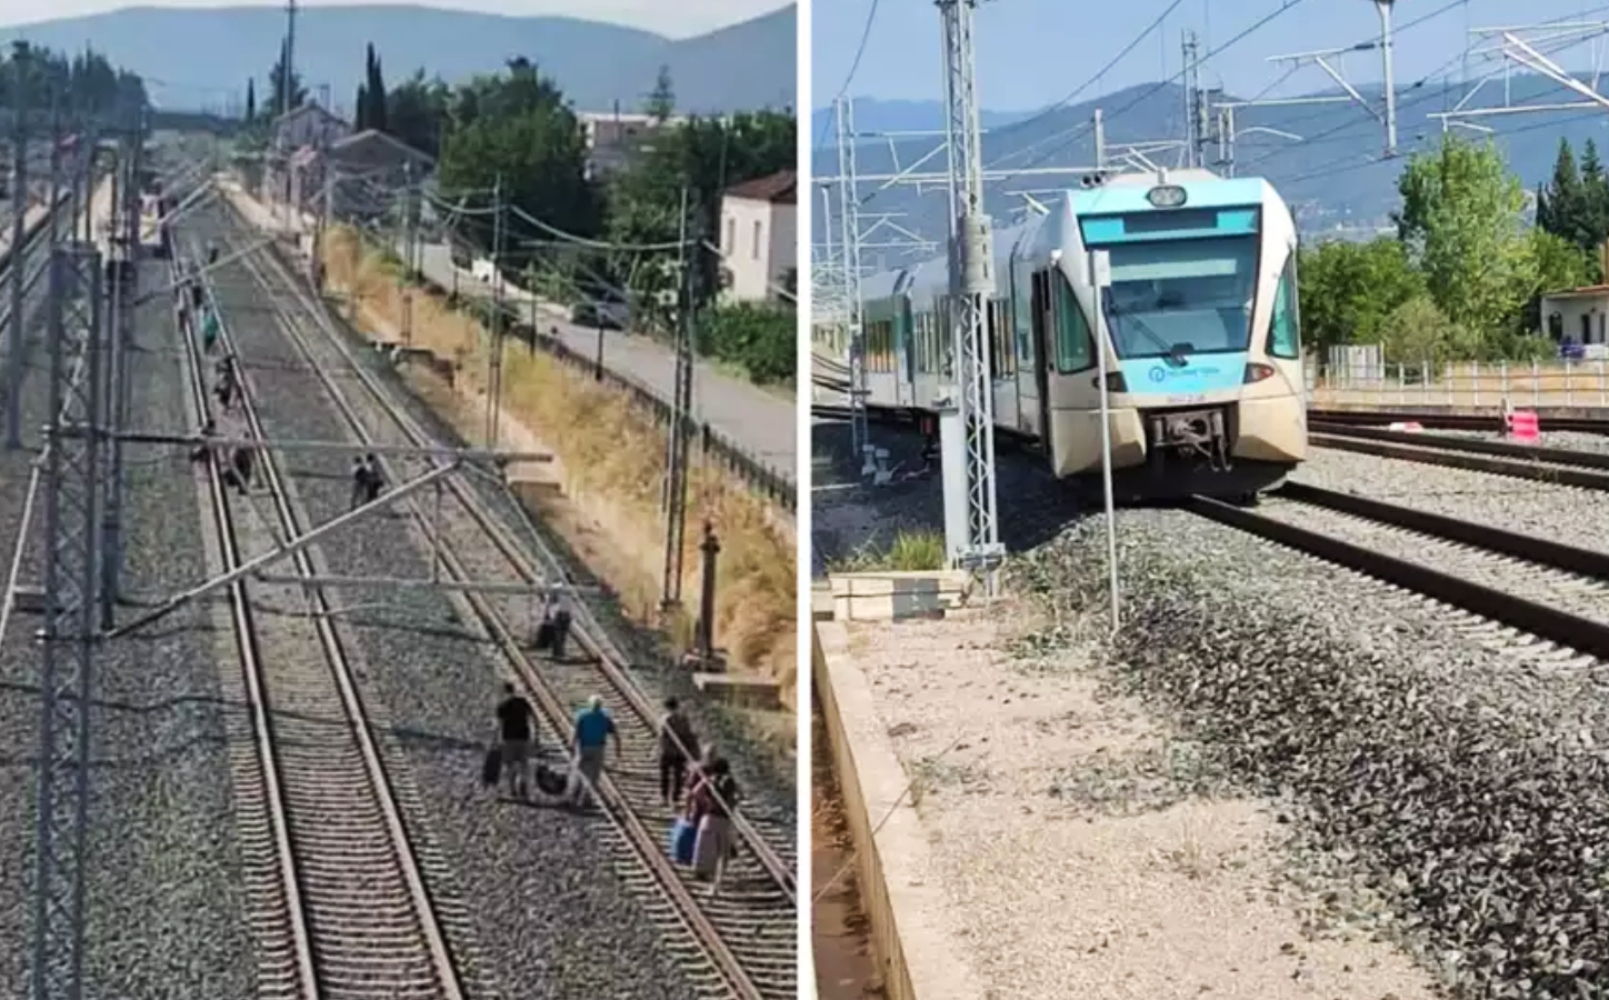 Ελλάδα 2.0: Εκτροχιάστηκε τρένο και οι επιβάτες αναγκάστηκαν να περπατήσουν σε γραμμή υπό τάση